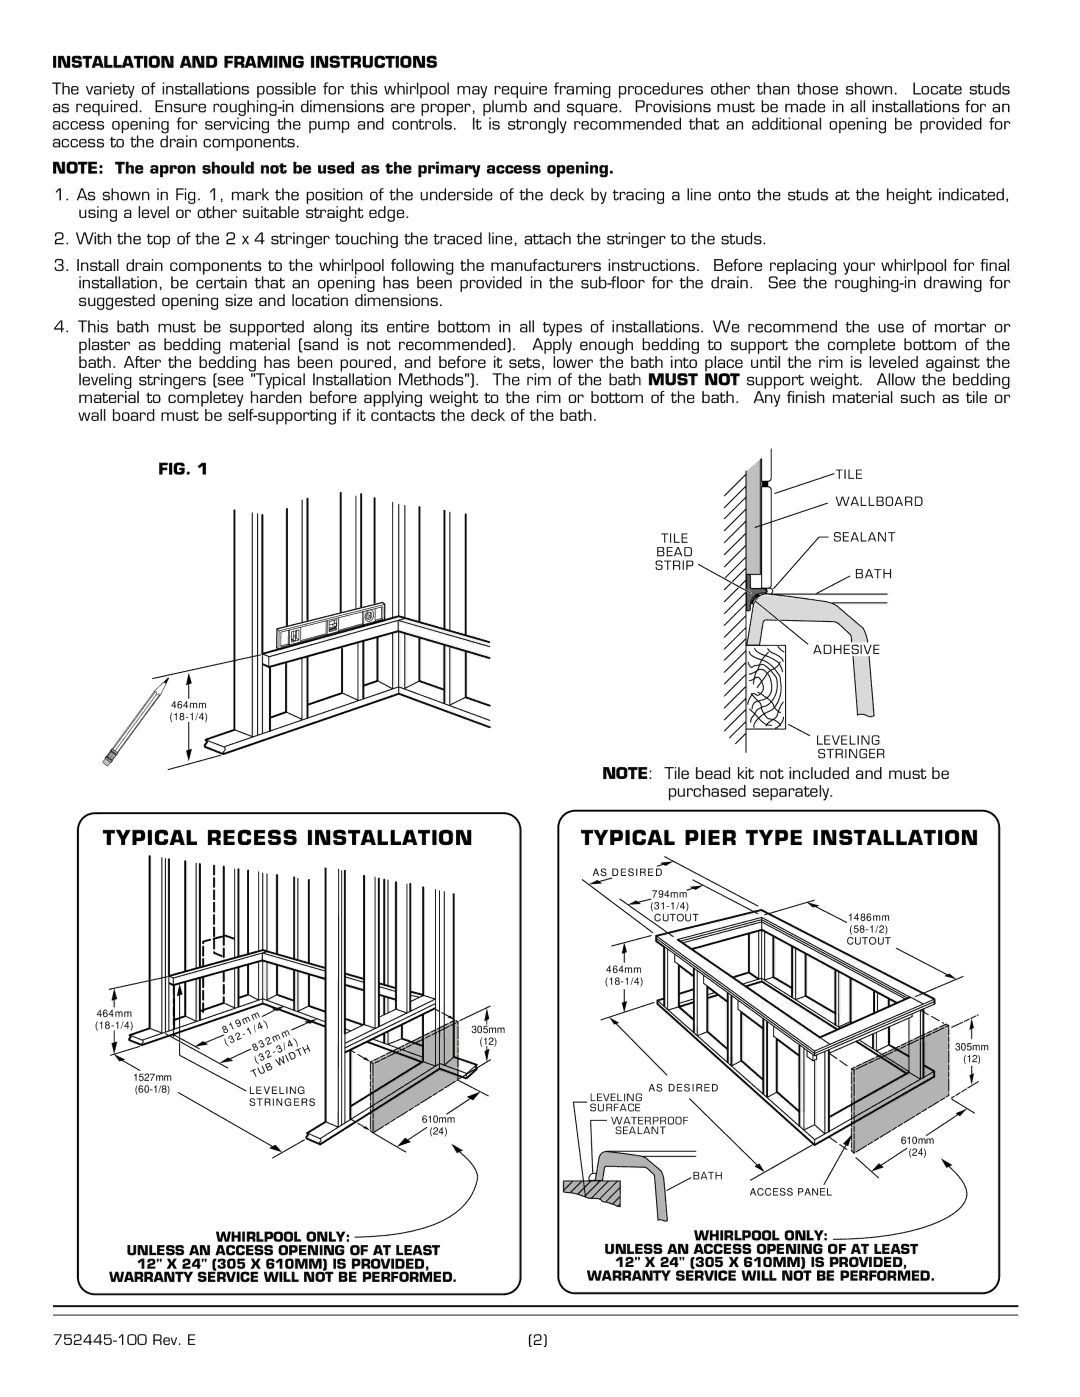 American Standard 2675 Series installation instructions Typical Recess Installation, Installation and Framing Instructions 